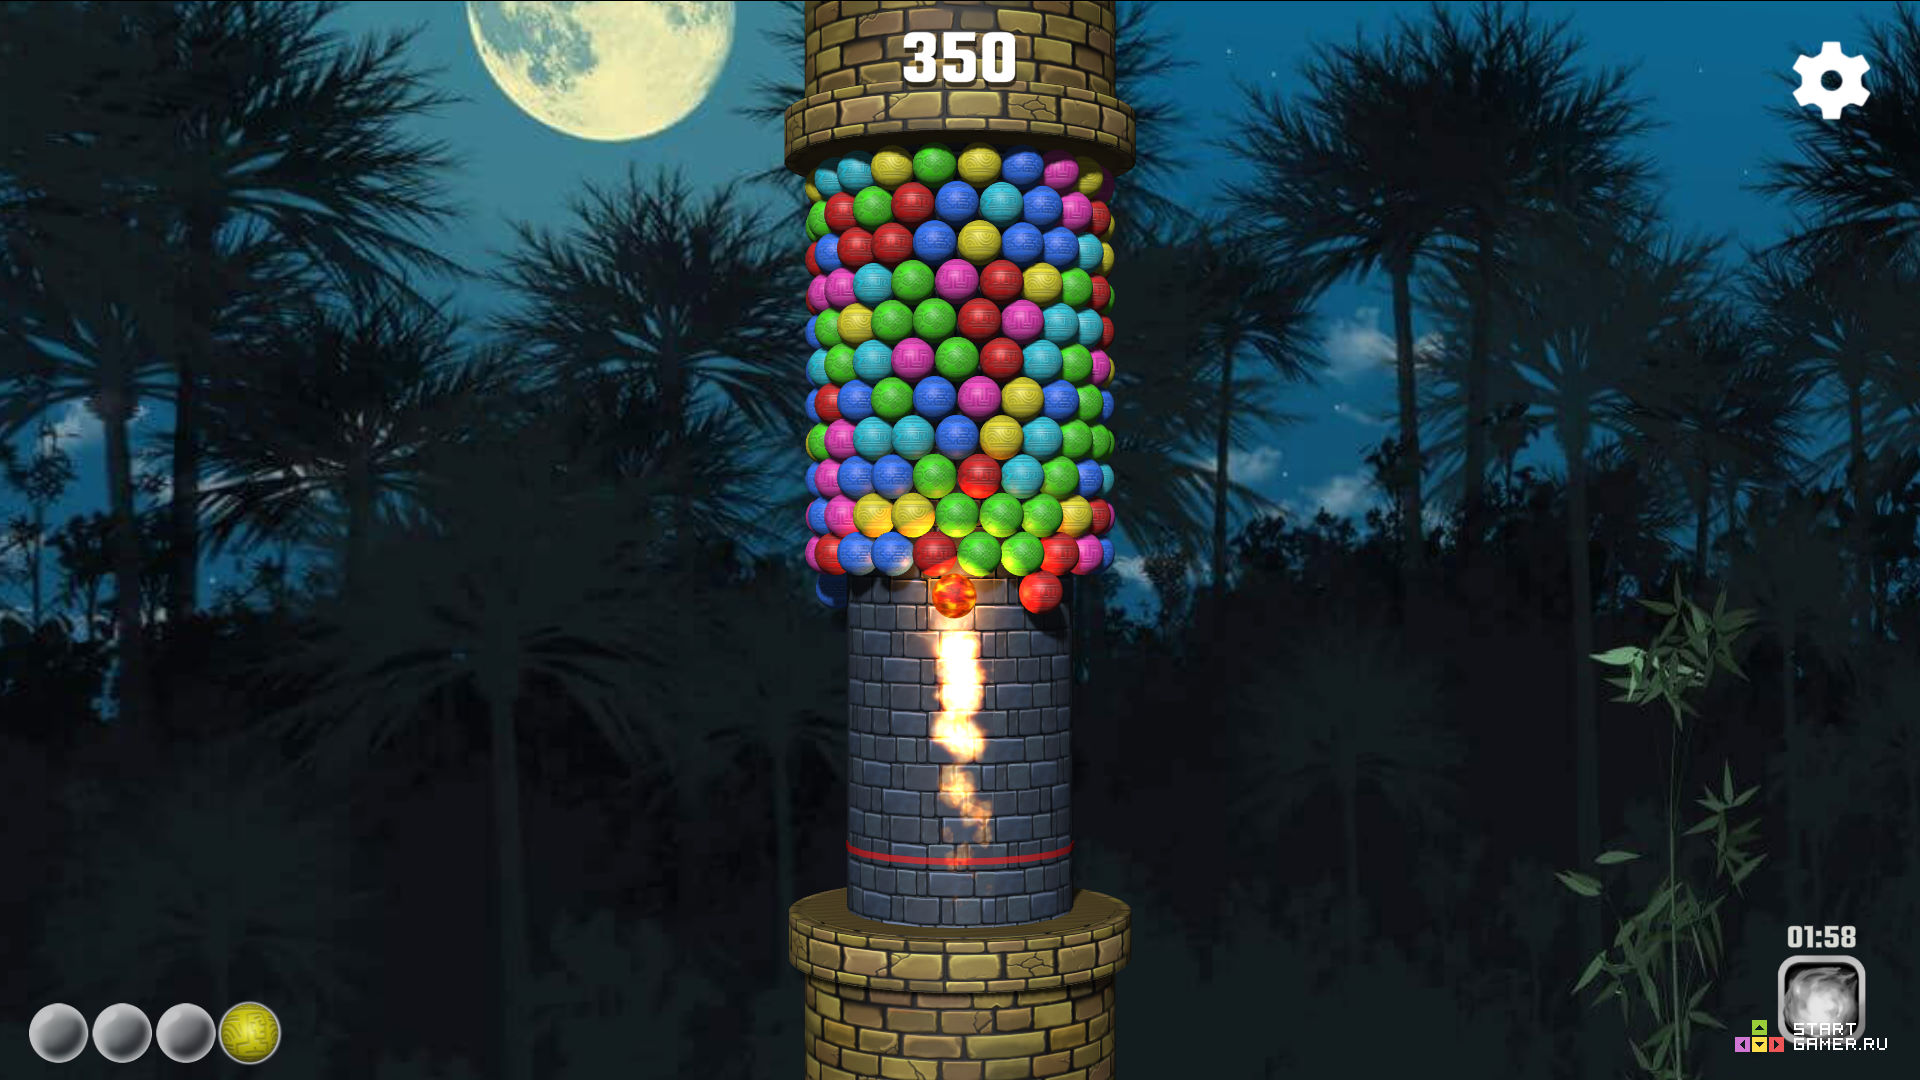 Бесплатные игры башня шариков. Башня каланча игра. Башня шариков игра. Башенки с шариками. Флеш игра башня.